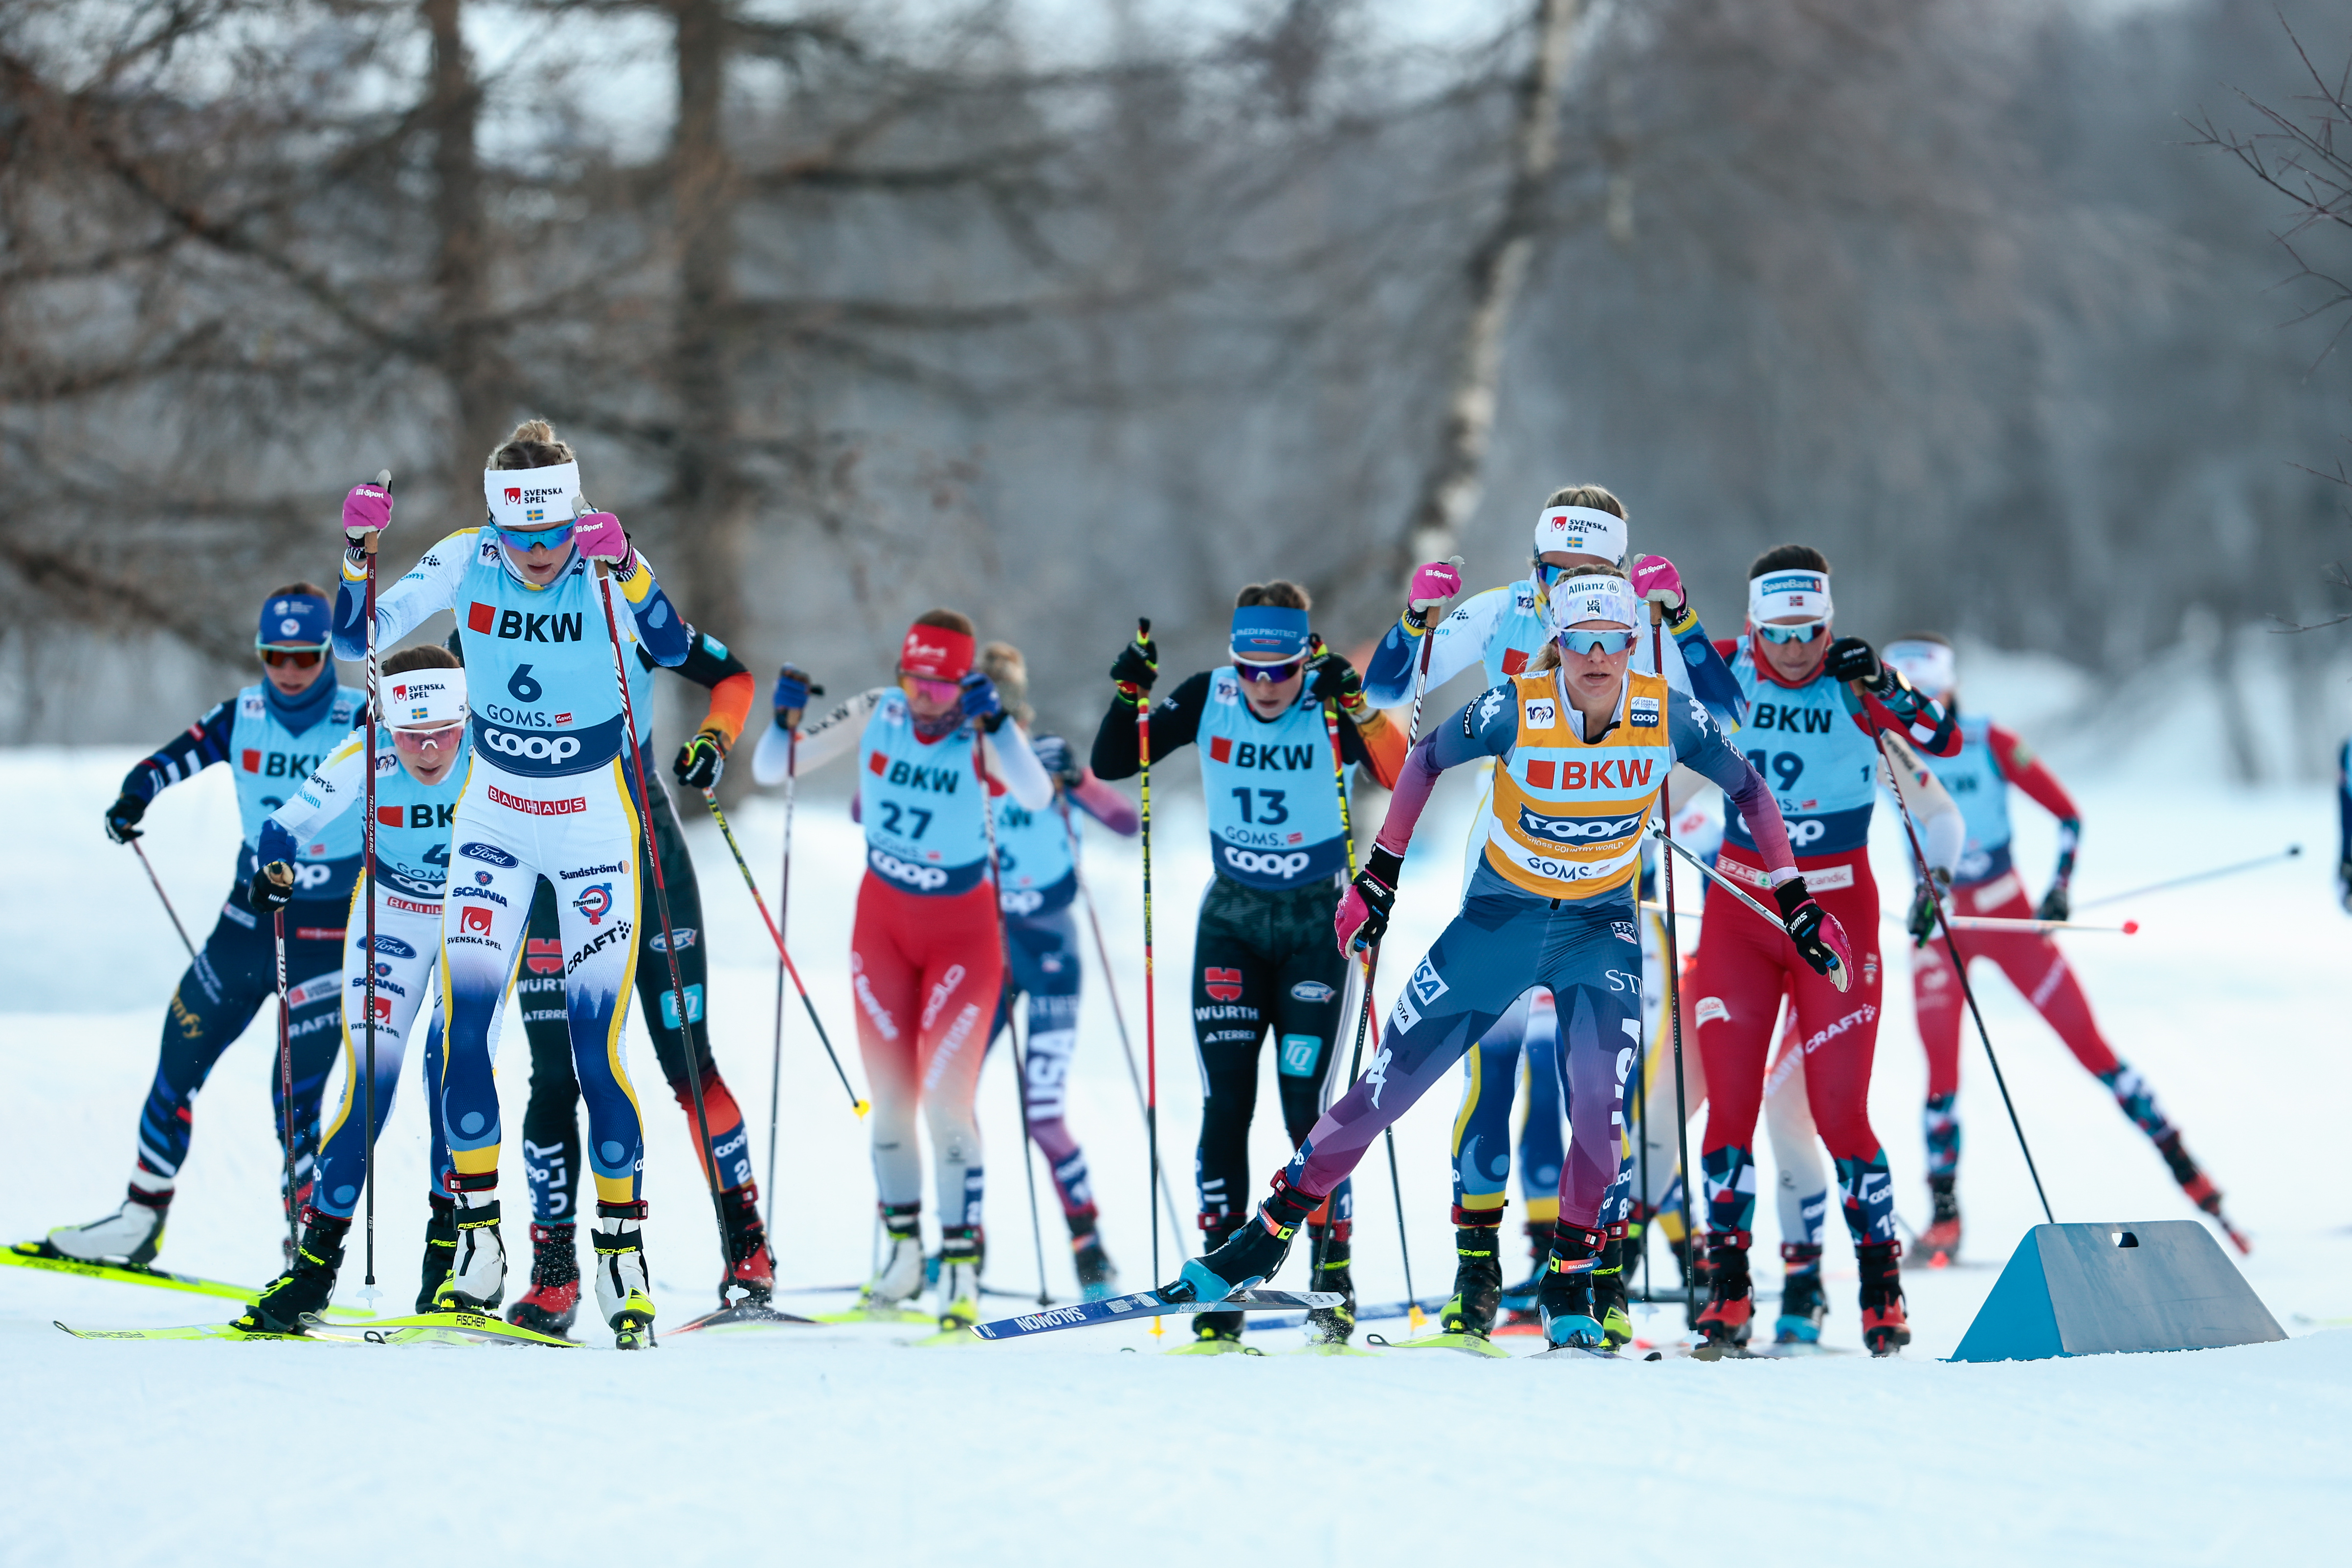 Stifel U.S. Cross Country Ski Team